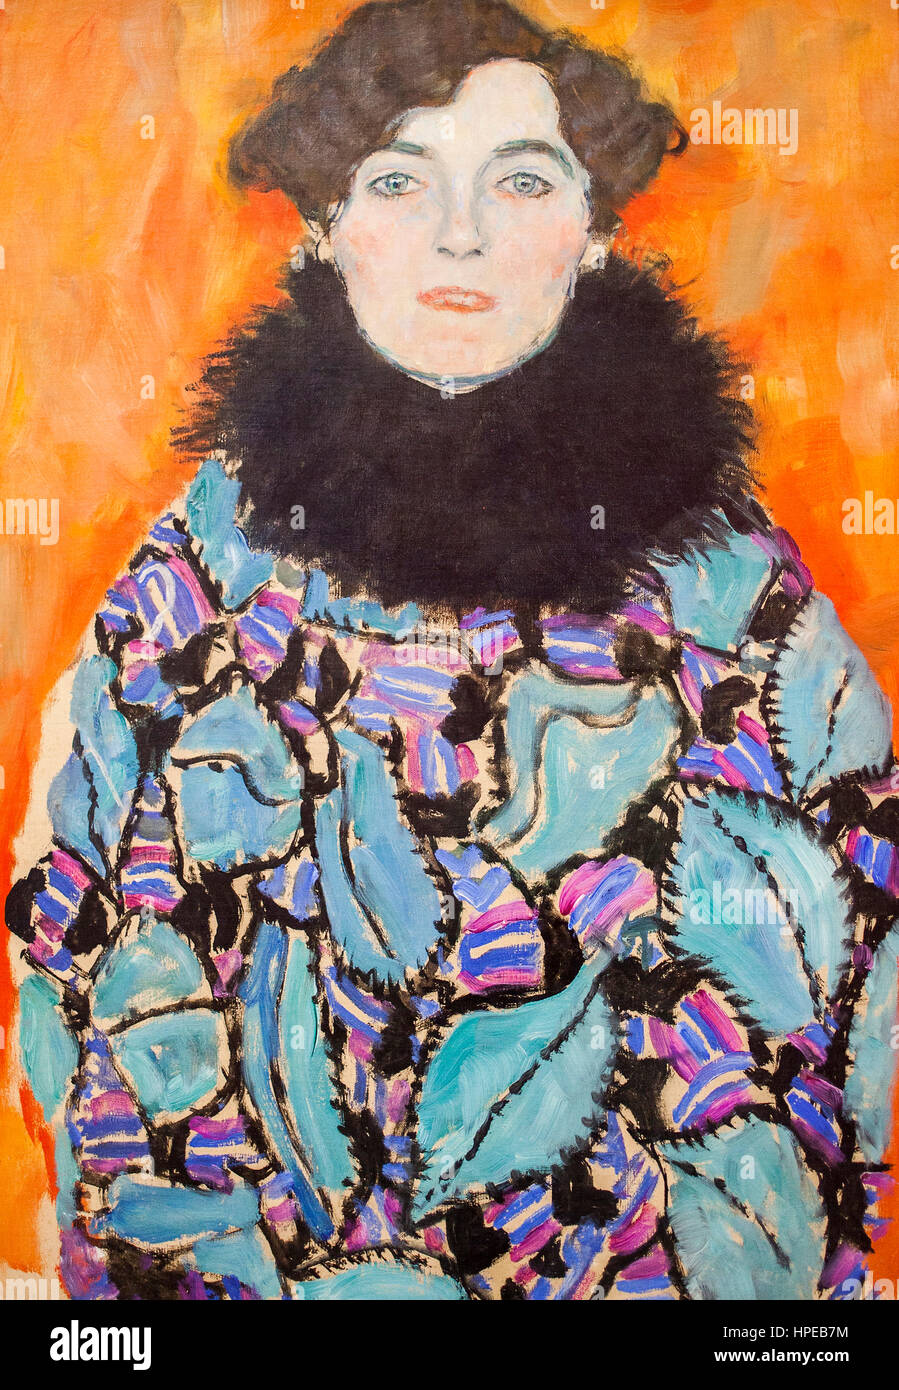 Johanna Staude,oil on canvas,Gustav Klimt,Belvedere palace,Vienna, Austria, Europe Stock Photo